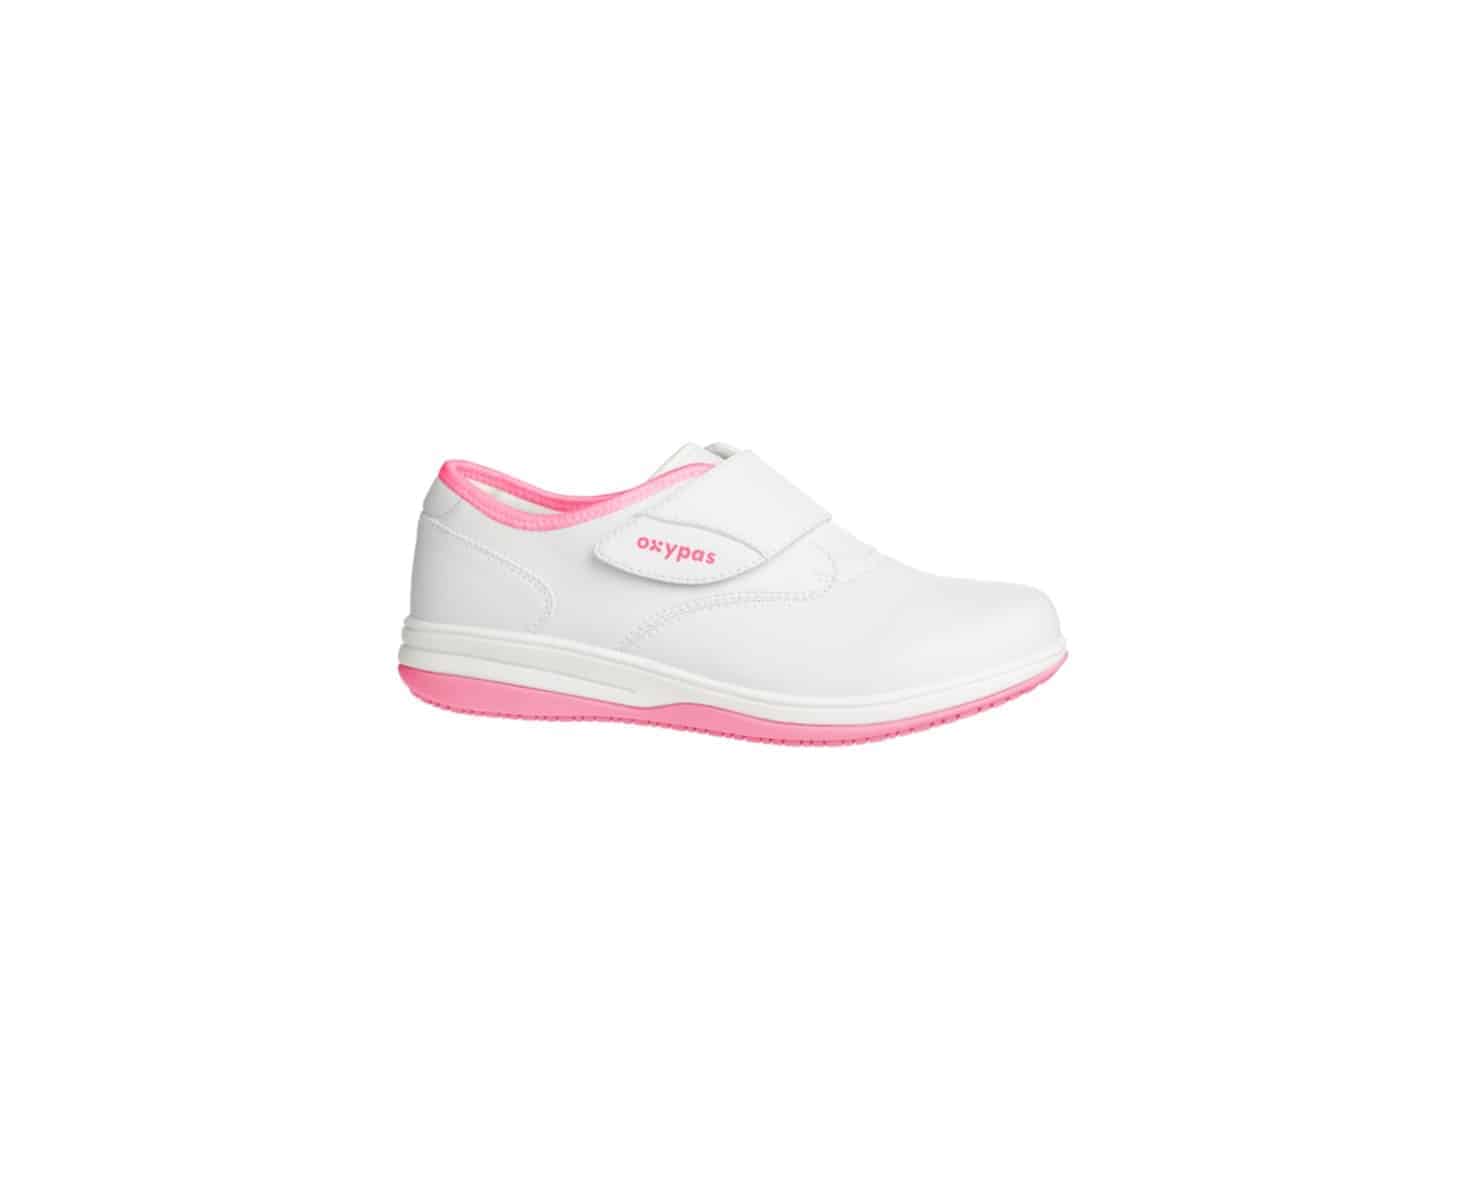 UK 6 Antistatic Nursing Shoes in White with Fuchsia Size EU 39 Oxypas Move Anais Slip-resistant 